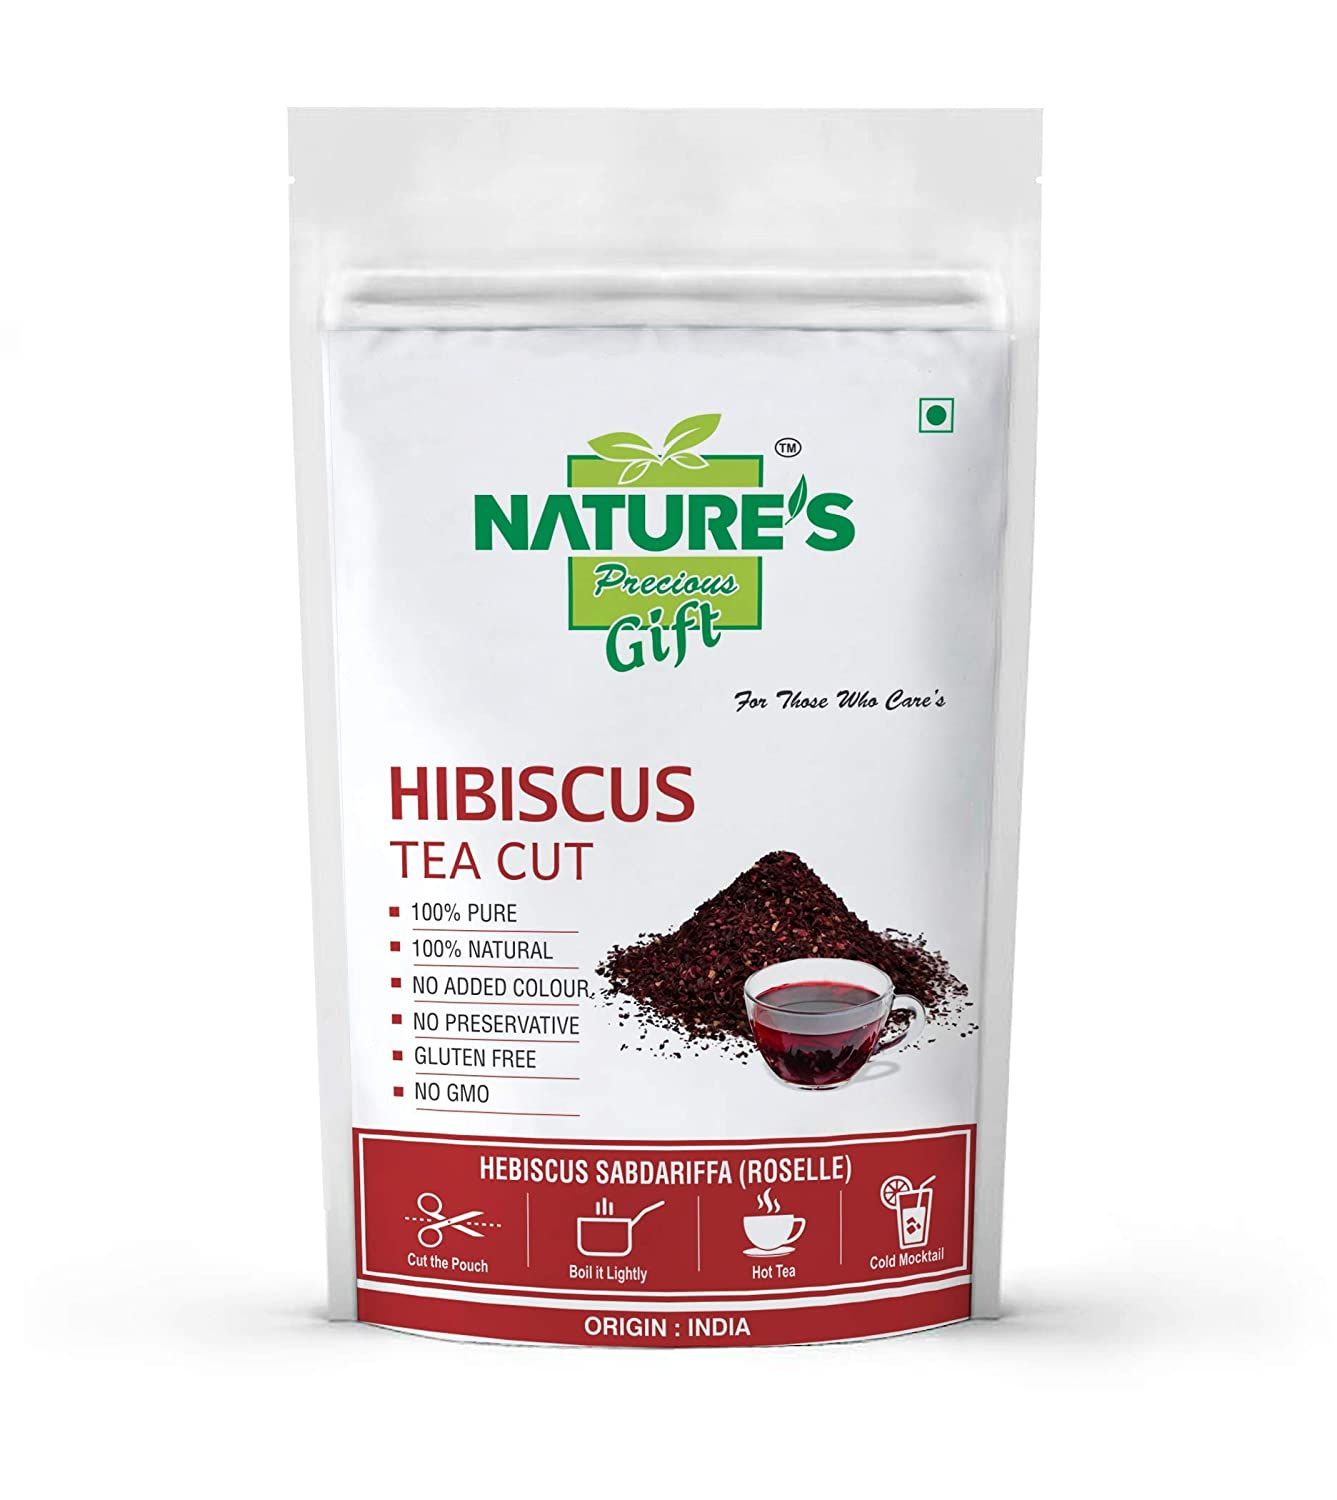 Nature's Gift Hibiscus Tea Cut Image